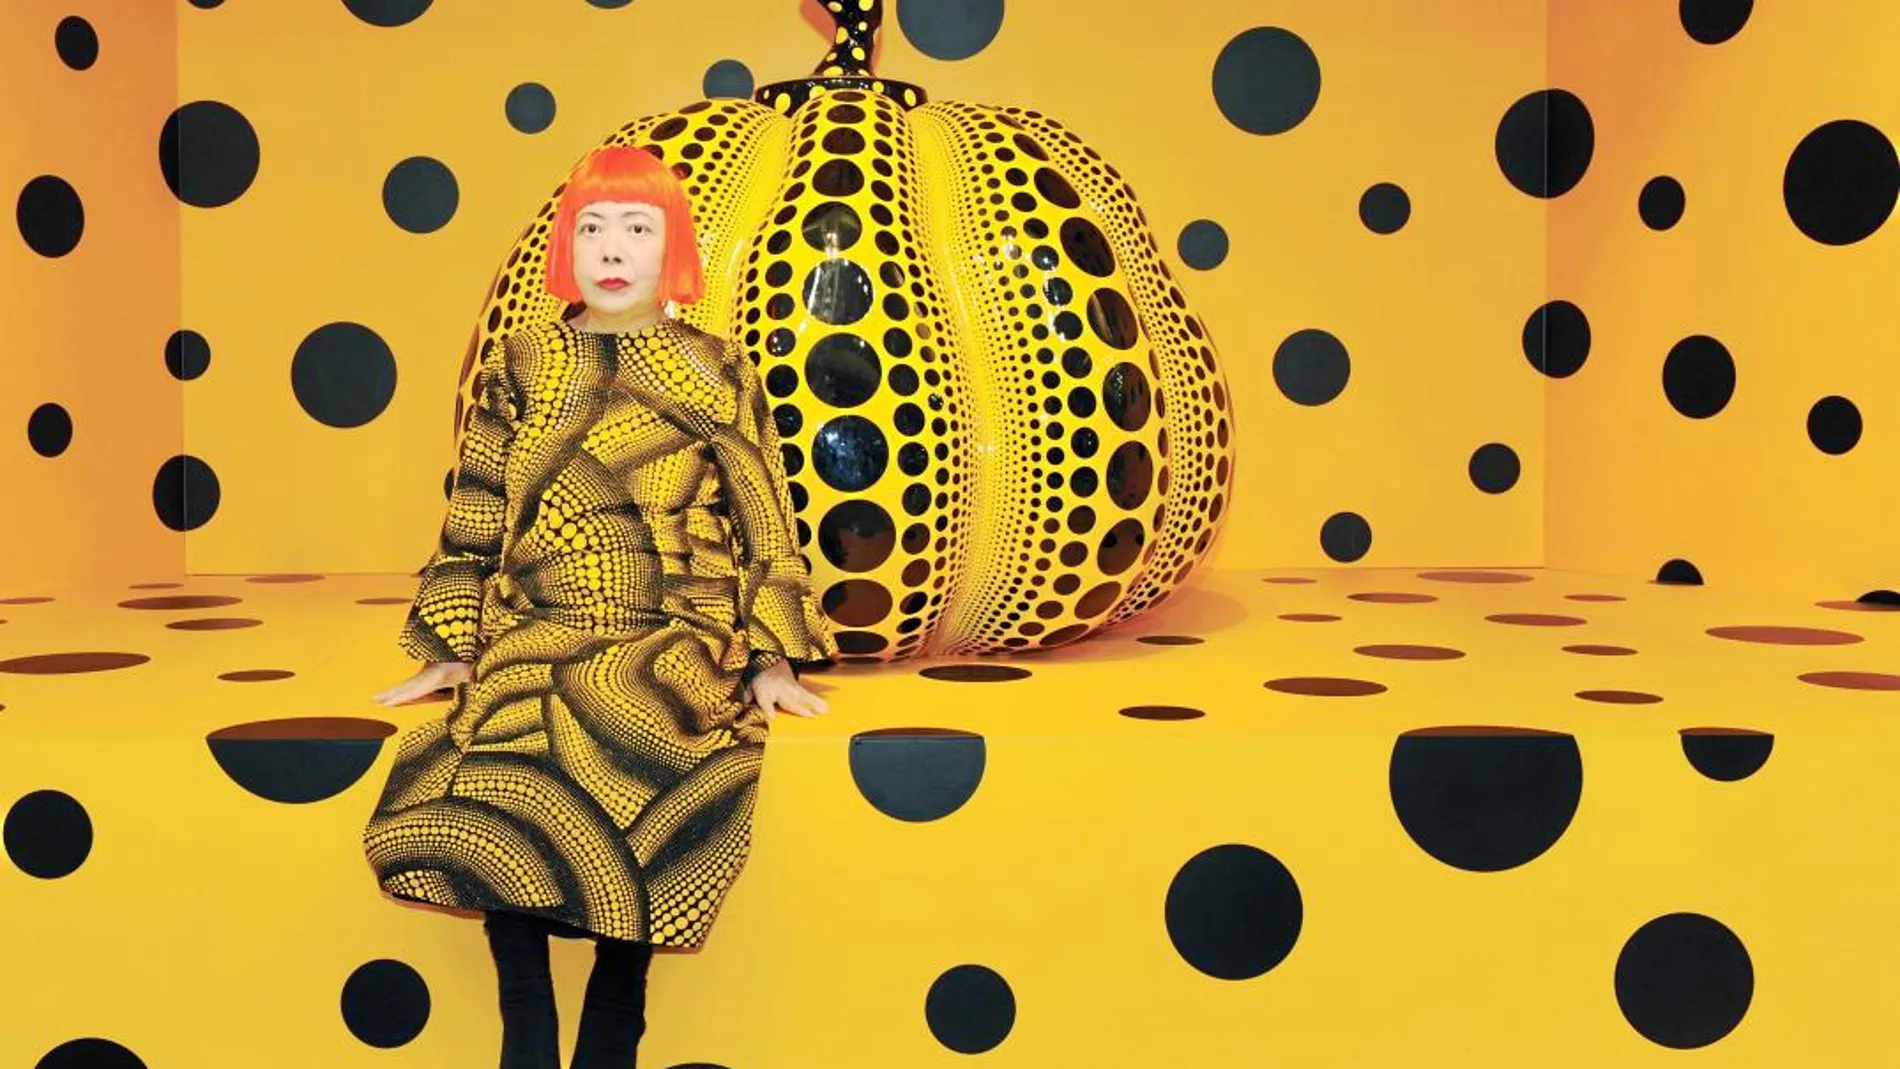 La artista japonesa Yayoi Kusama posa junto a una de sus instalaciones. Las calabazas y los círculos son parte de su seña de identidad